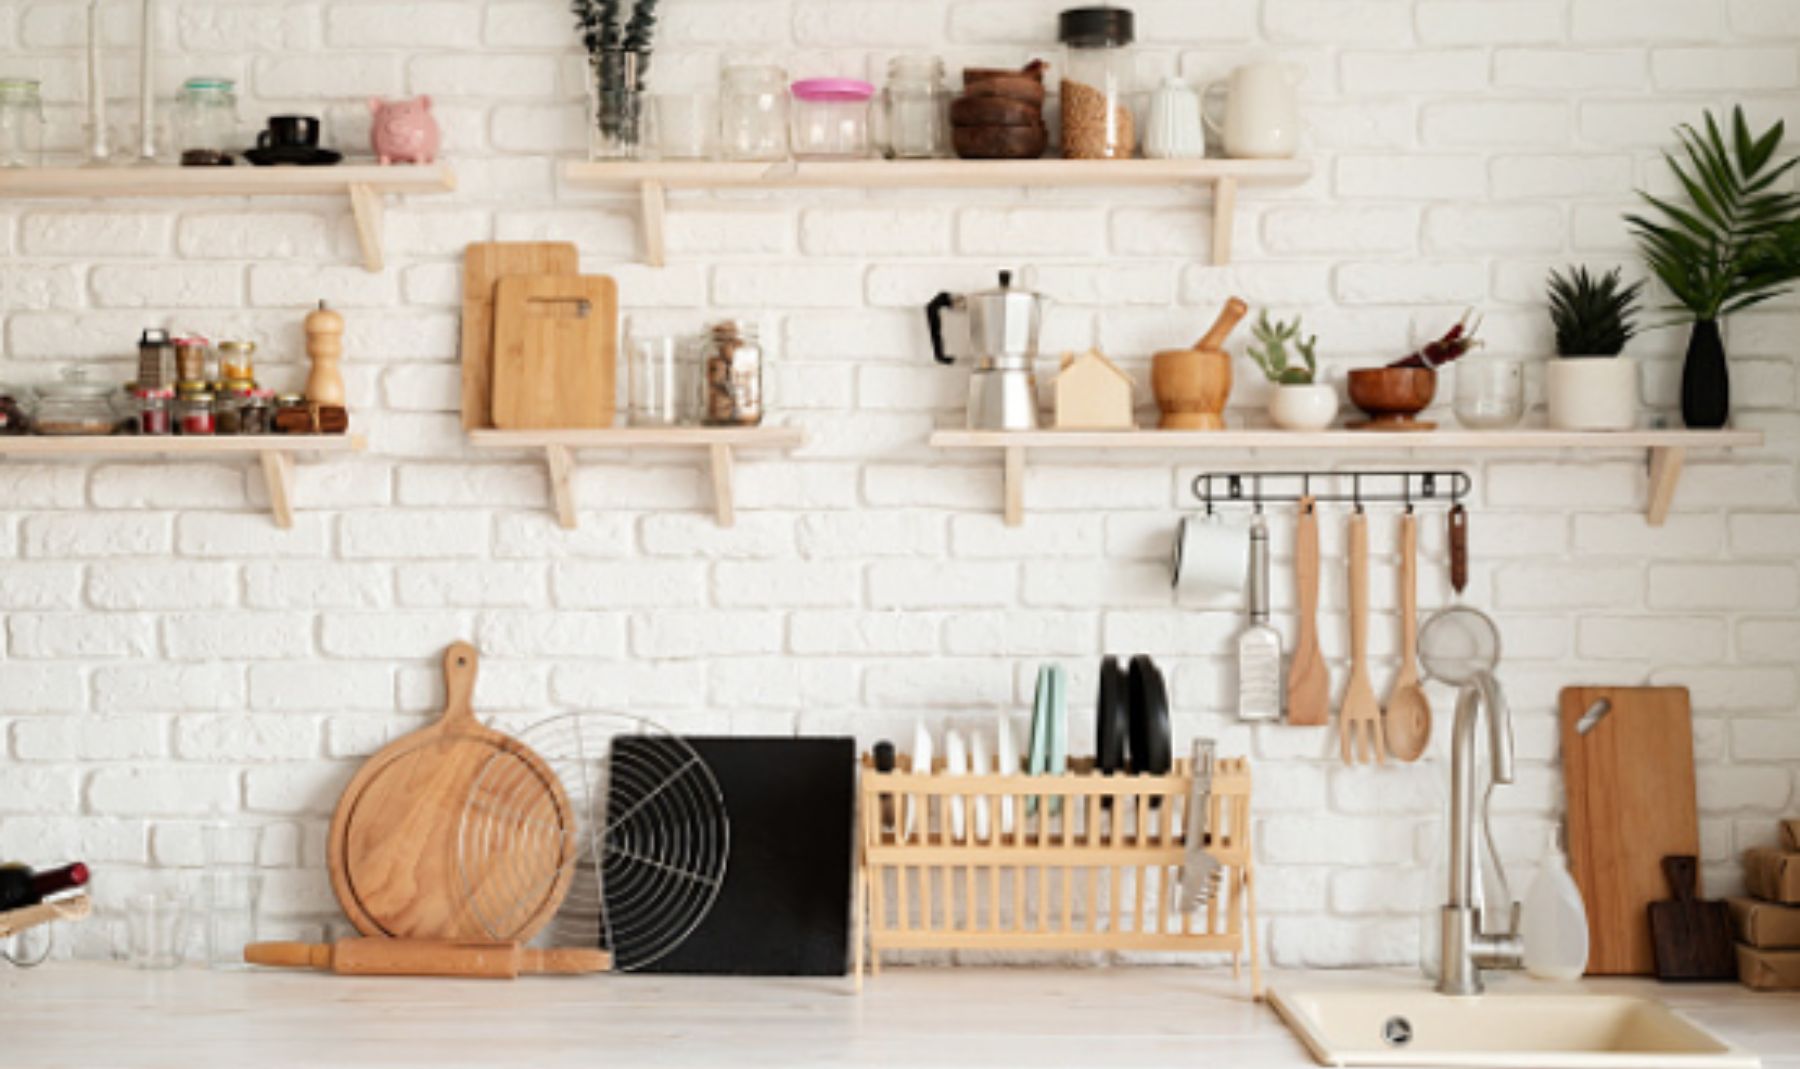 Los 10 artículos básicos de cocina para tu primer hogar